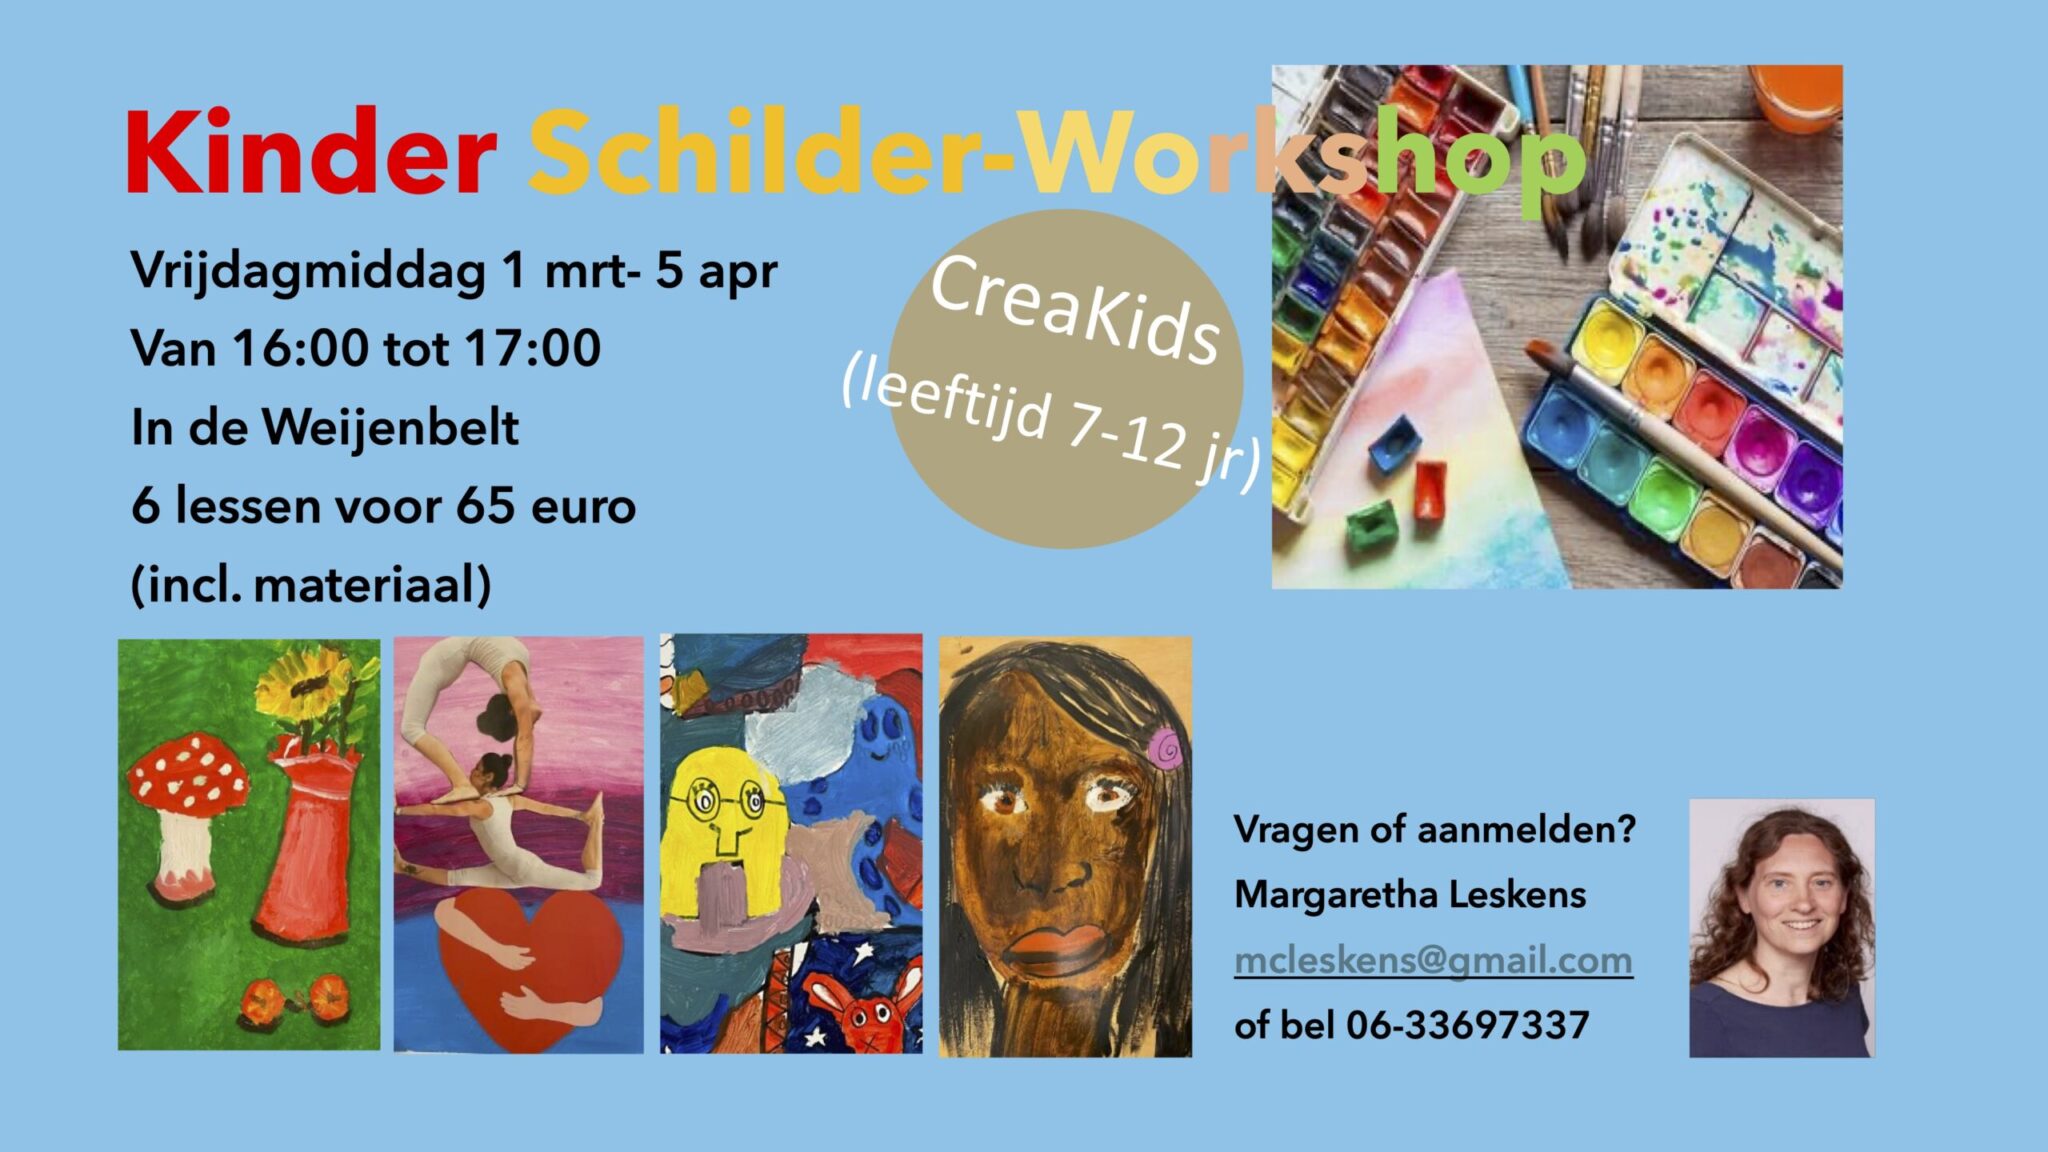 Ontdek De Creatieve Wereld Met Kinderschilder Workshop Door Margaretha Leskens!